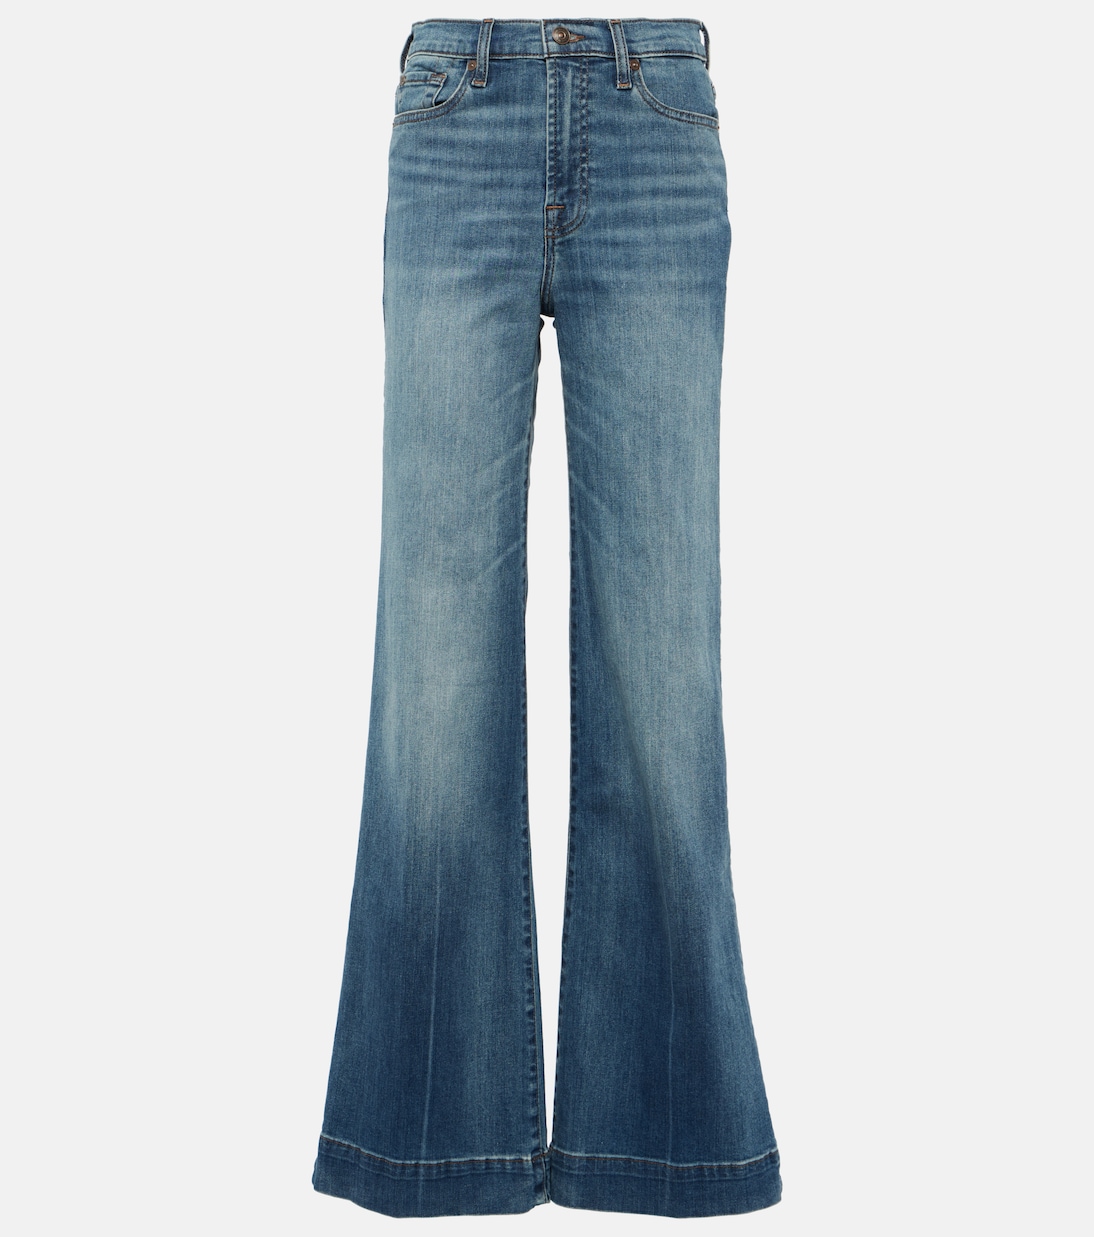 Расклешенные джинсы modern dojo с высокой посадкой 7 For All Mankind, синий